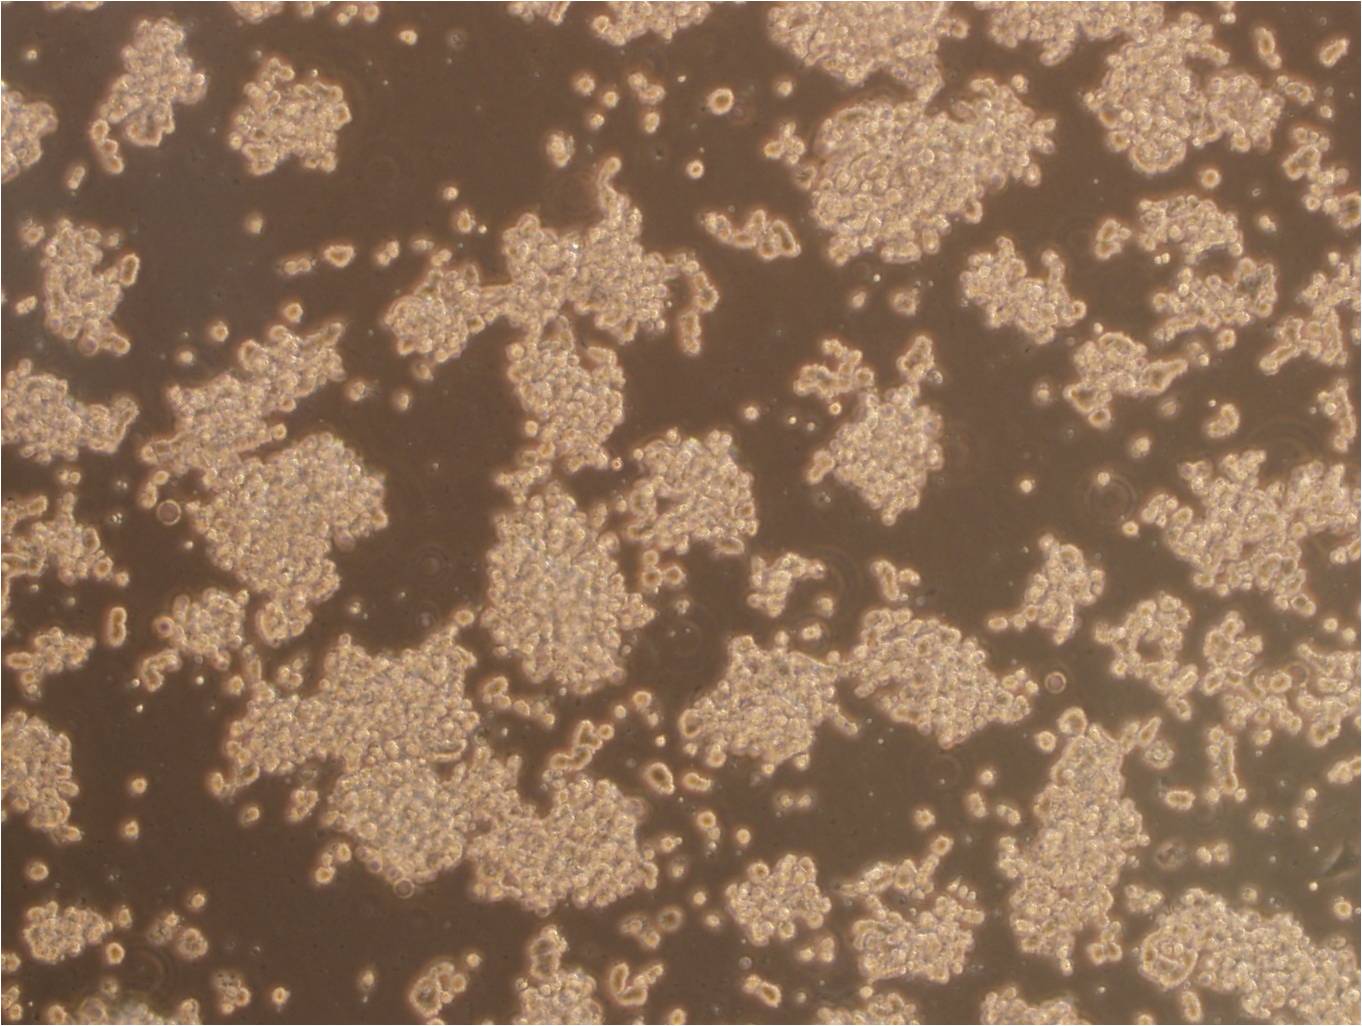 C1498 Cell:小鼠白血病细胞系